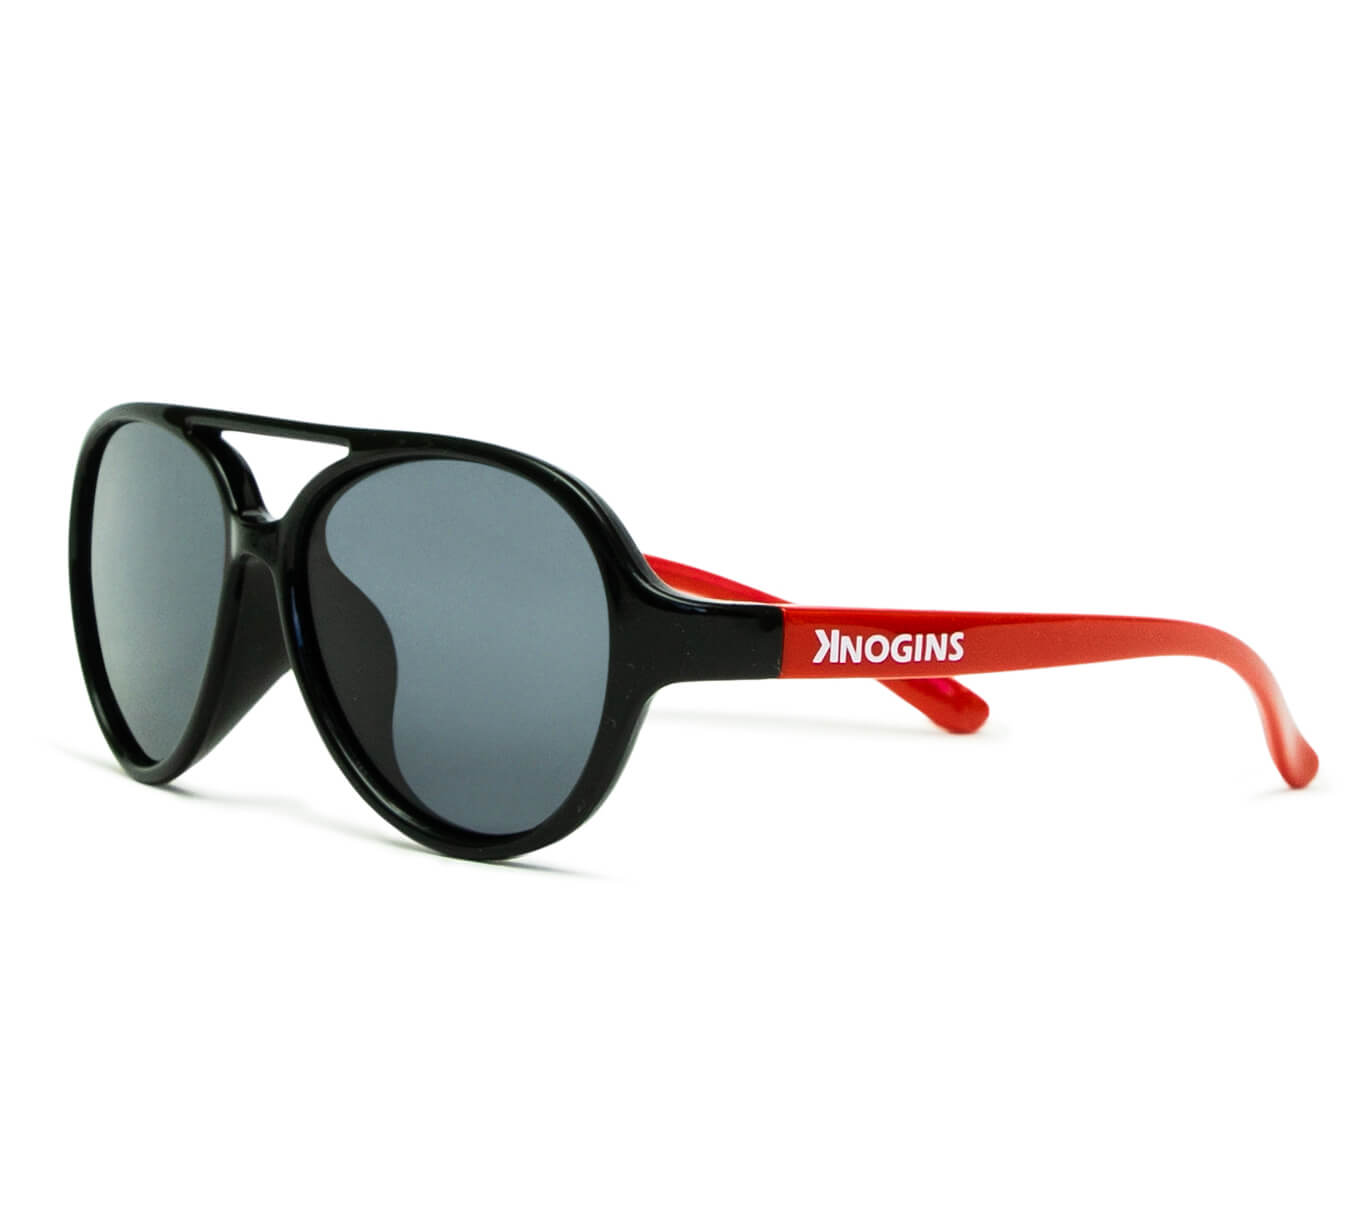 Apollo Gloss Black/Red Sunglasses